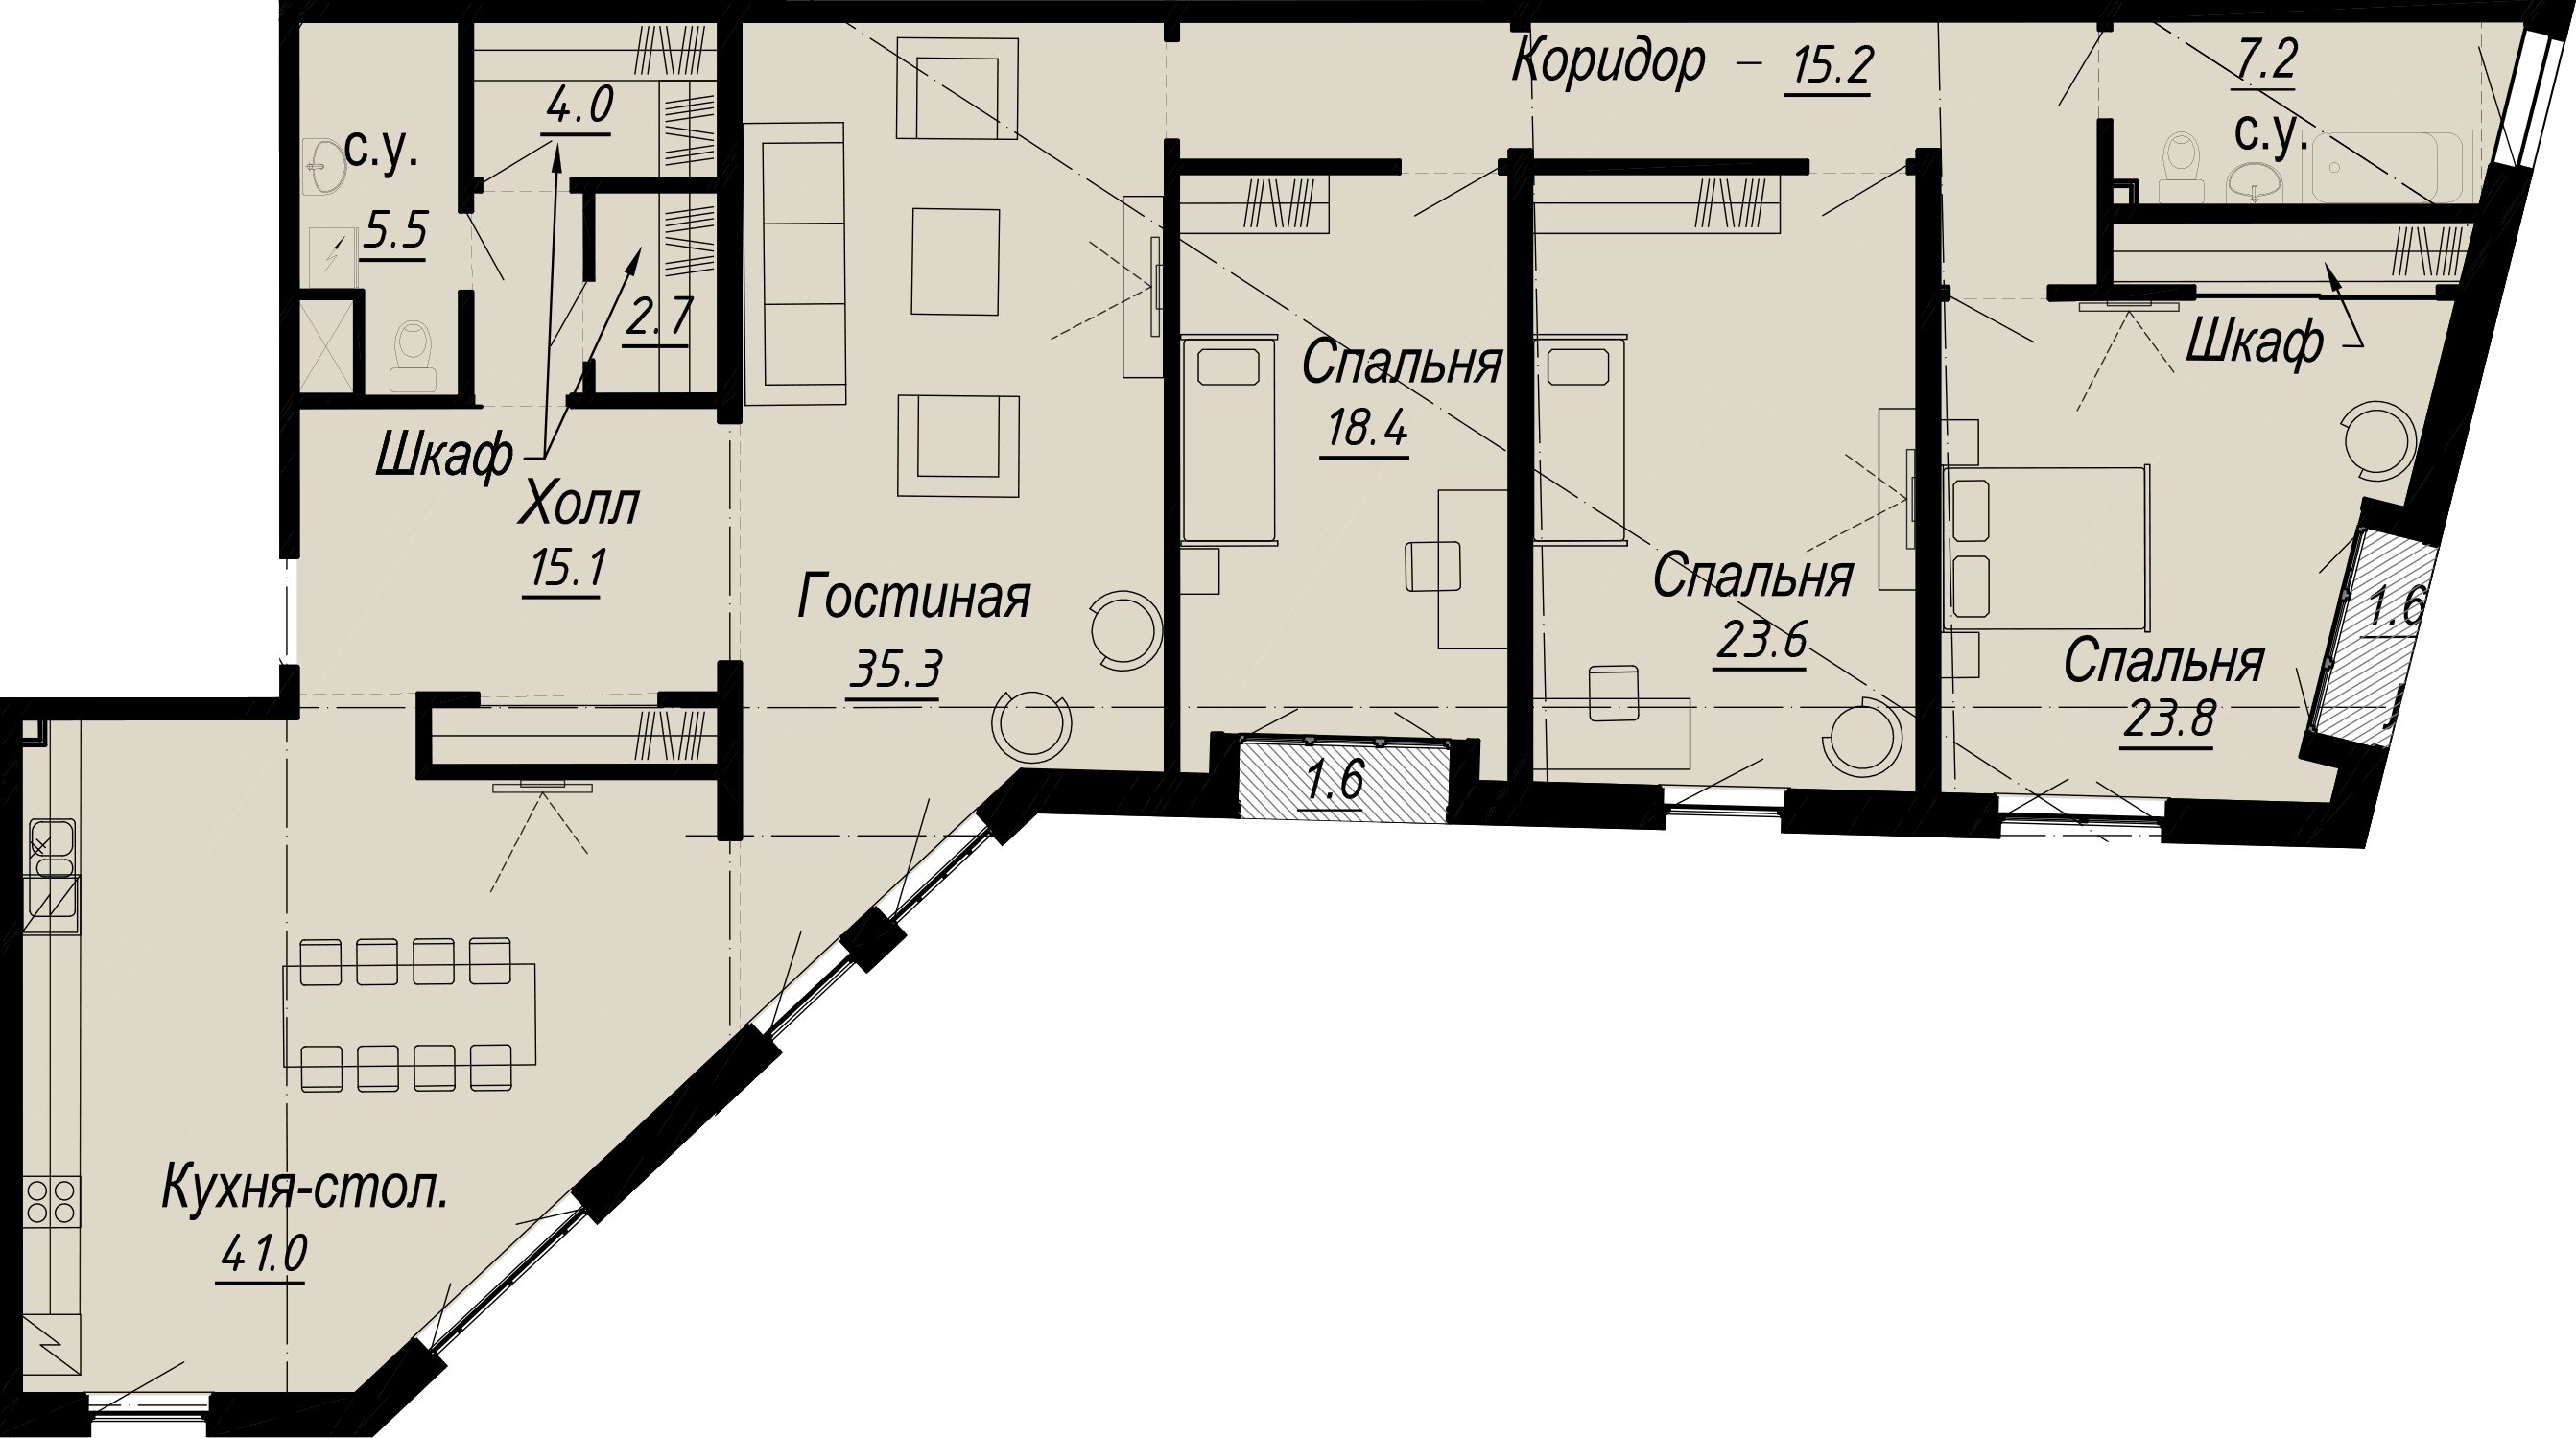 4-комнатная квартира  №7-5 в Meltzer Hall: 196.01 м², этаж 5 - купить в Санкт-Петербурге